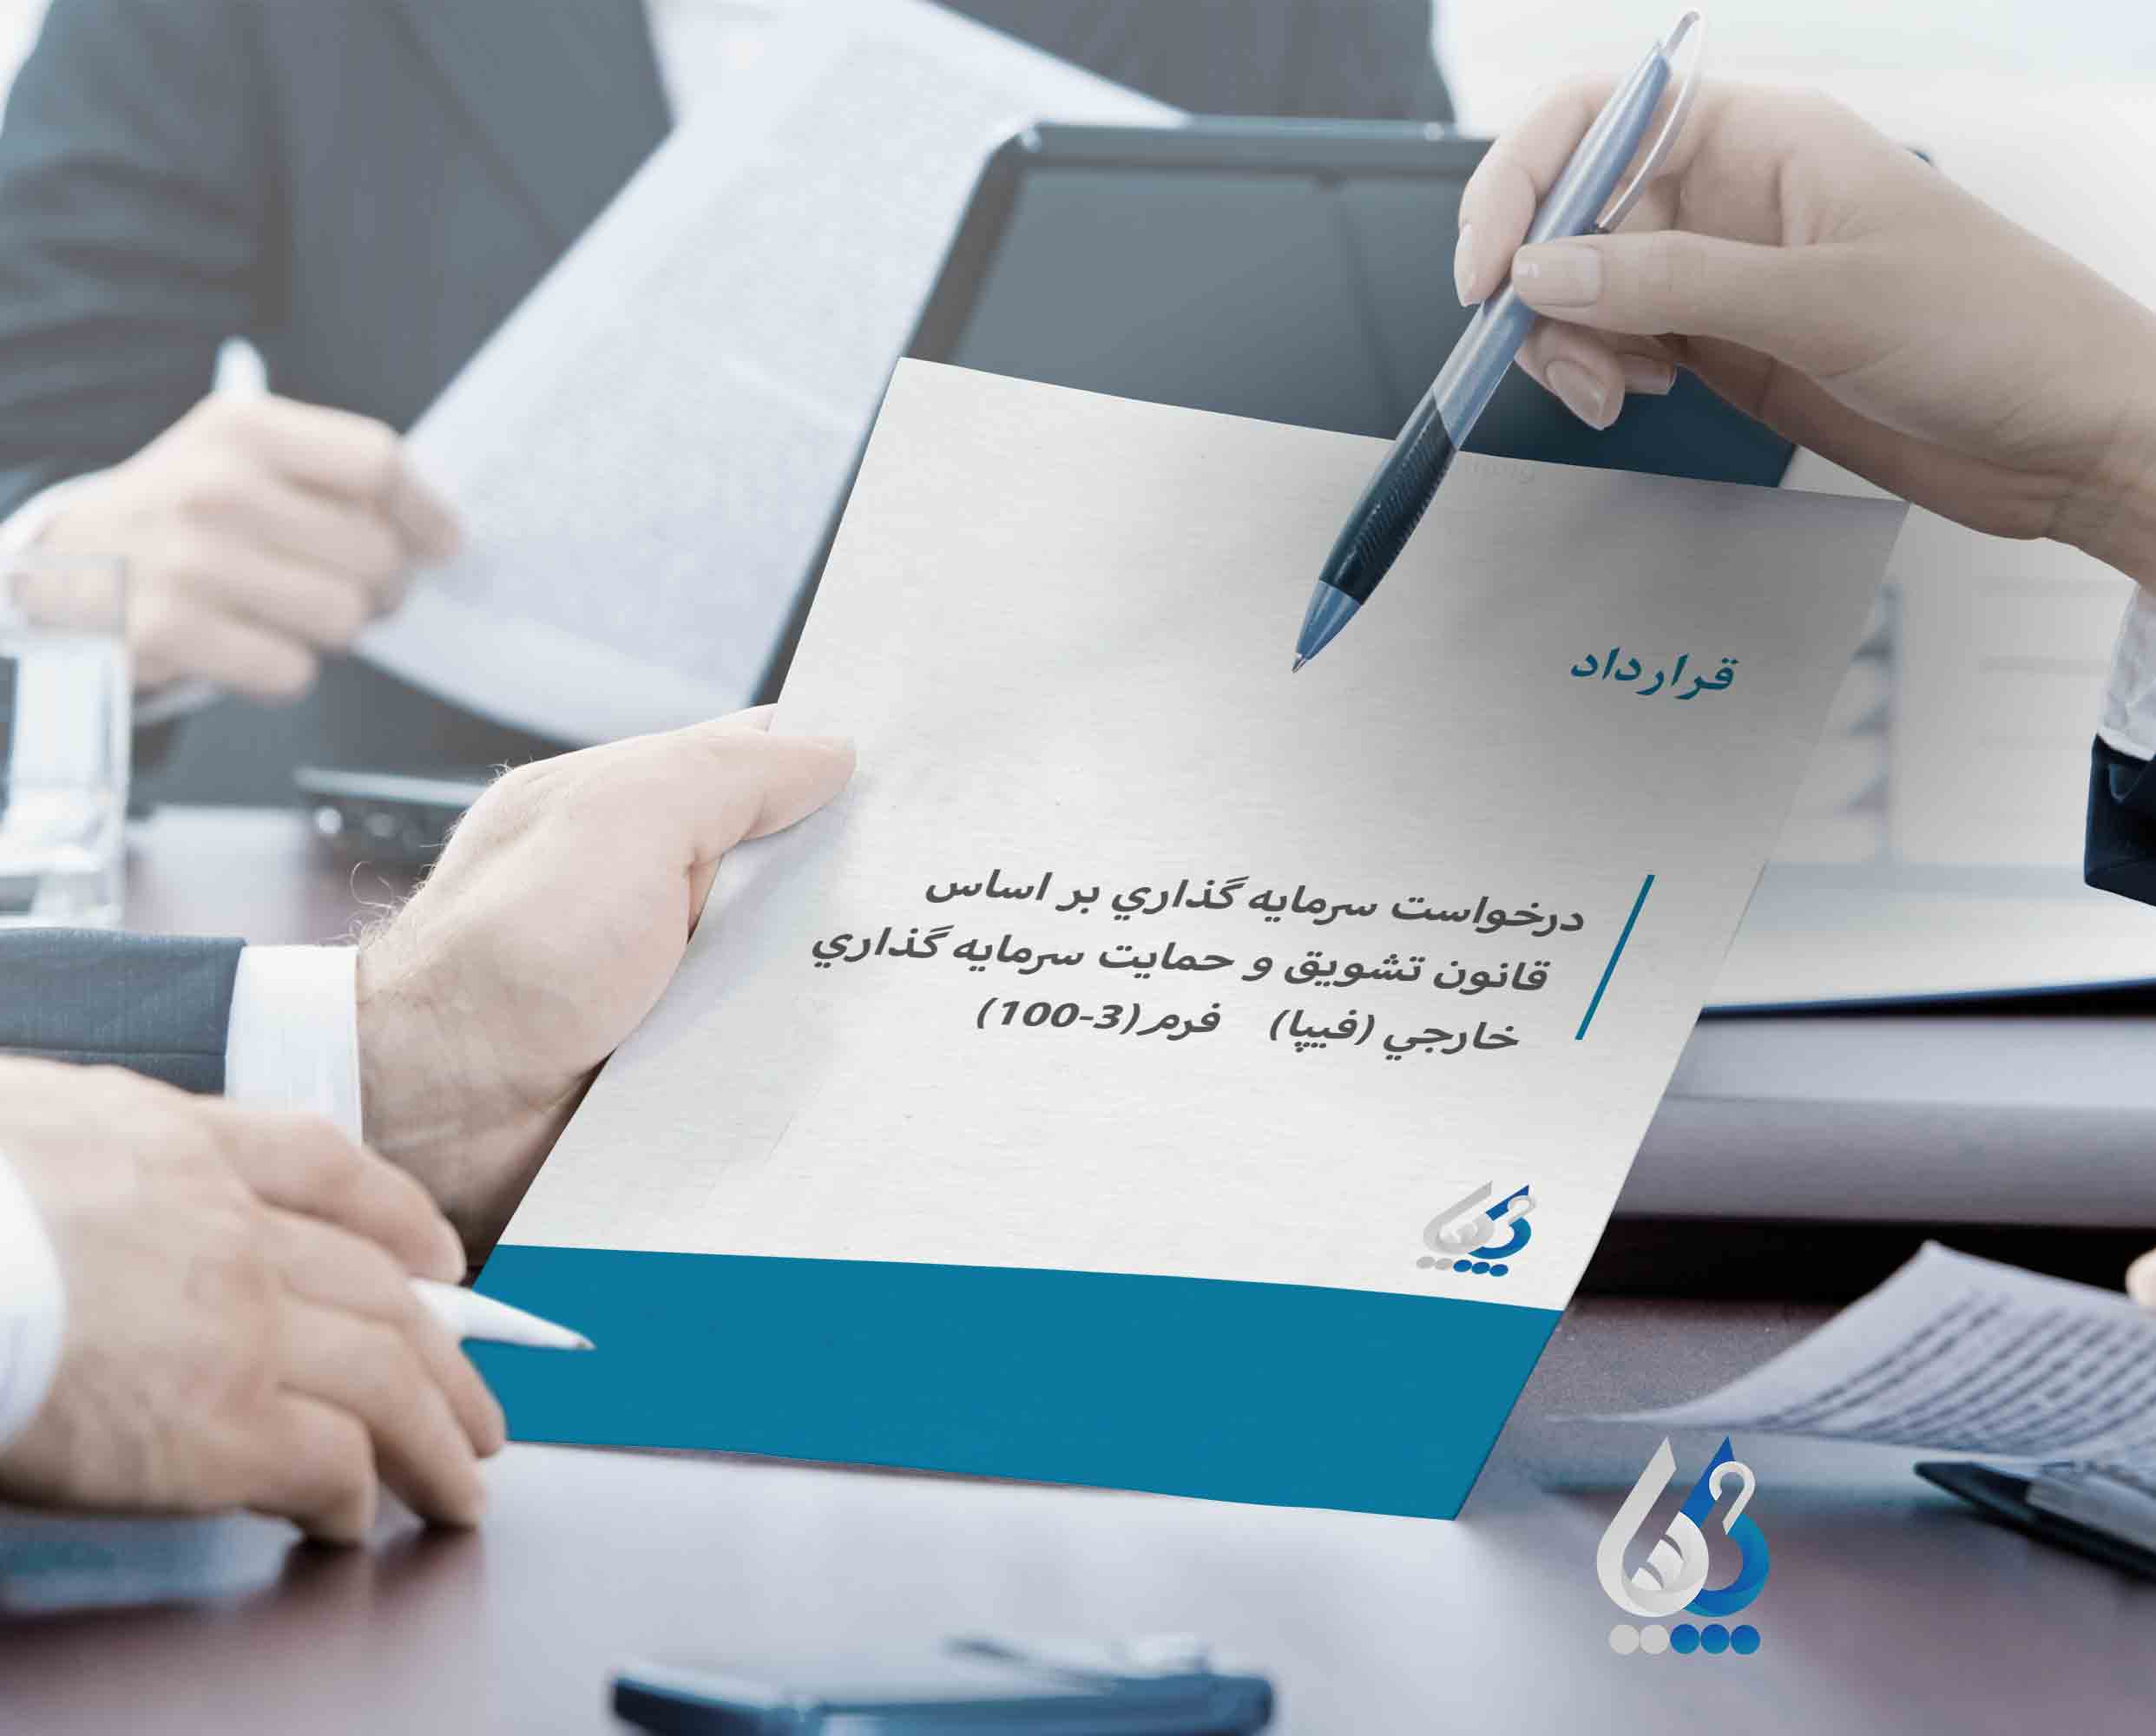 قرارداد درخواست سرمایه گذاری بر اساس قانون تشویق و حمایت سرمایه گذاری خارجی (فیپا) فرم(۳-۱۰۰)